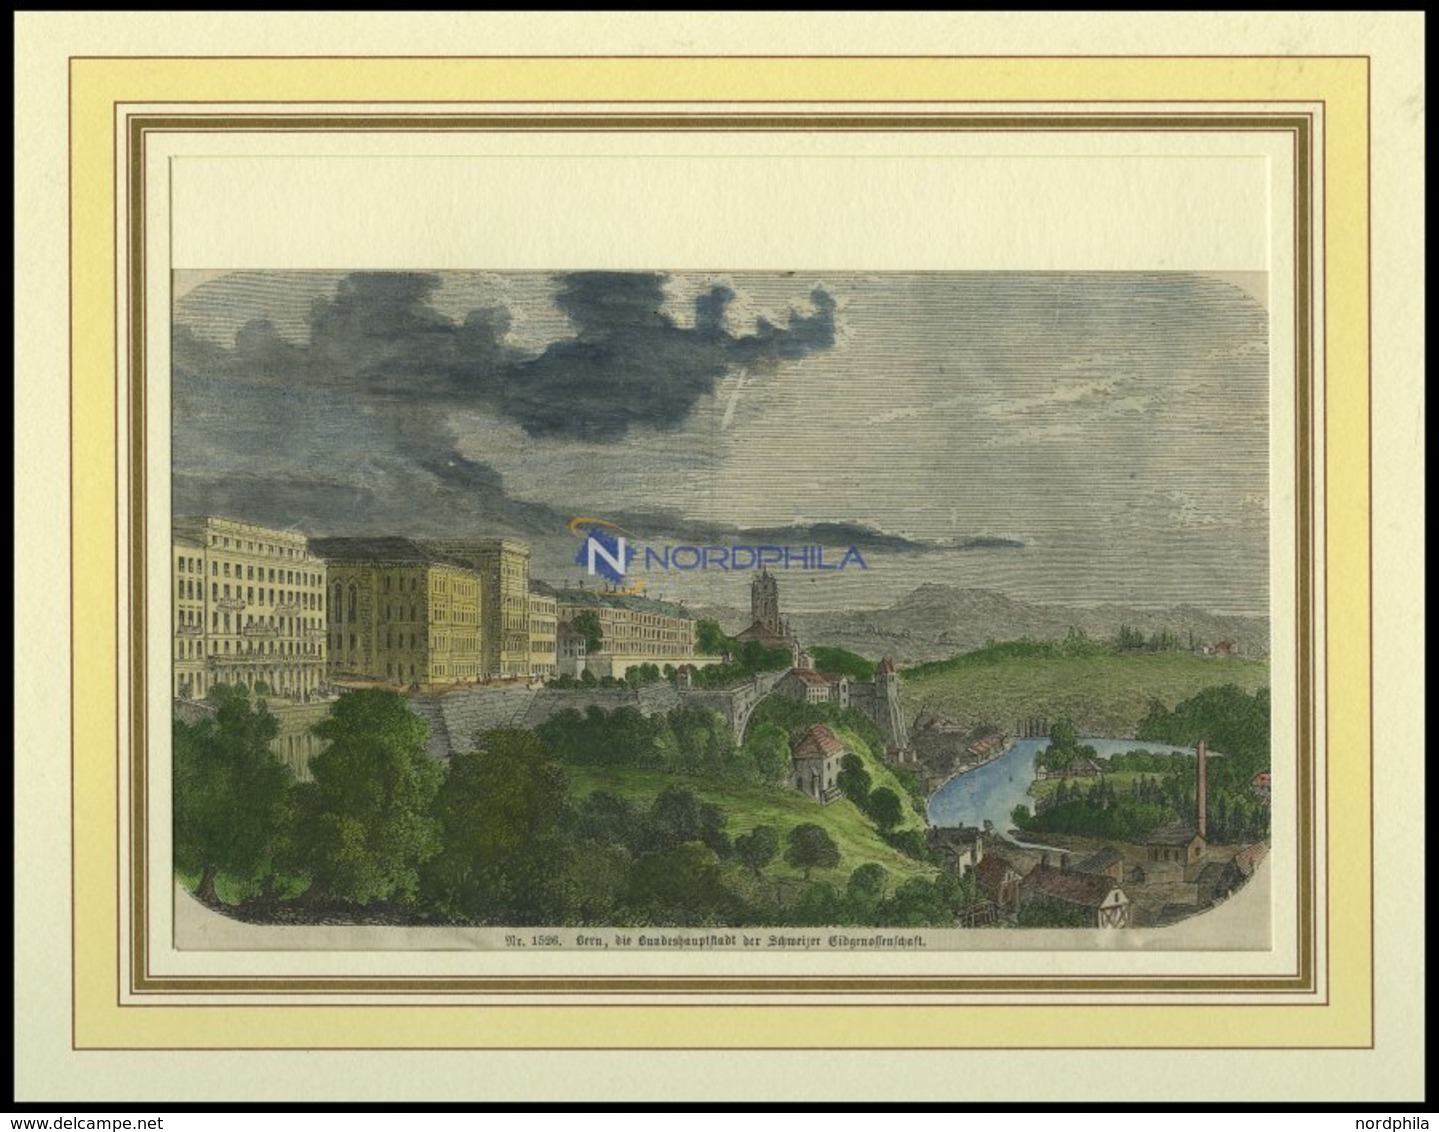 BERN, Teilansicht, Kolorierter Holzstich Von 1860 - Lithographien